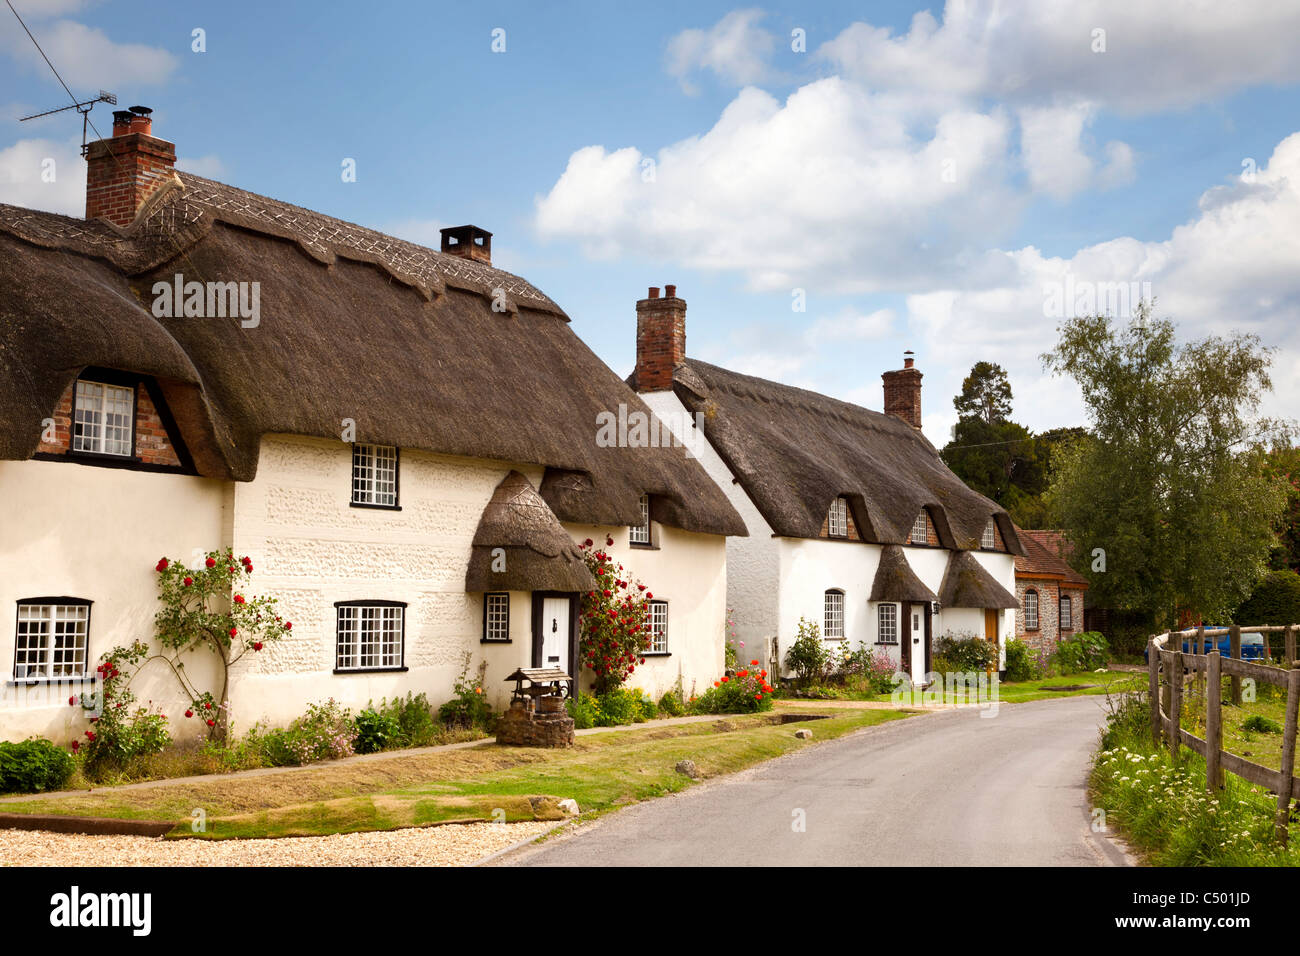 Schöne alte Reihe von ziemlich traditionellen englischen strohgedeckten Hütten, Tarrant Monkton, Dorset Dorf, England, UK Stockfoto